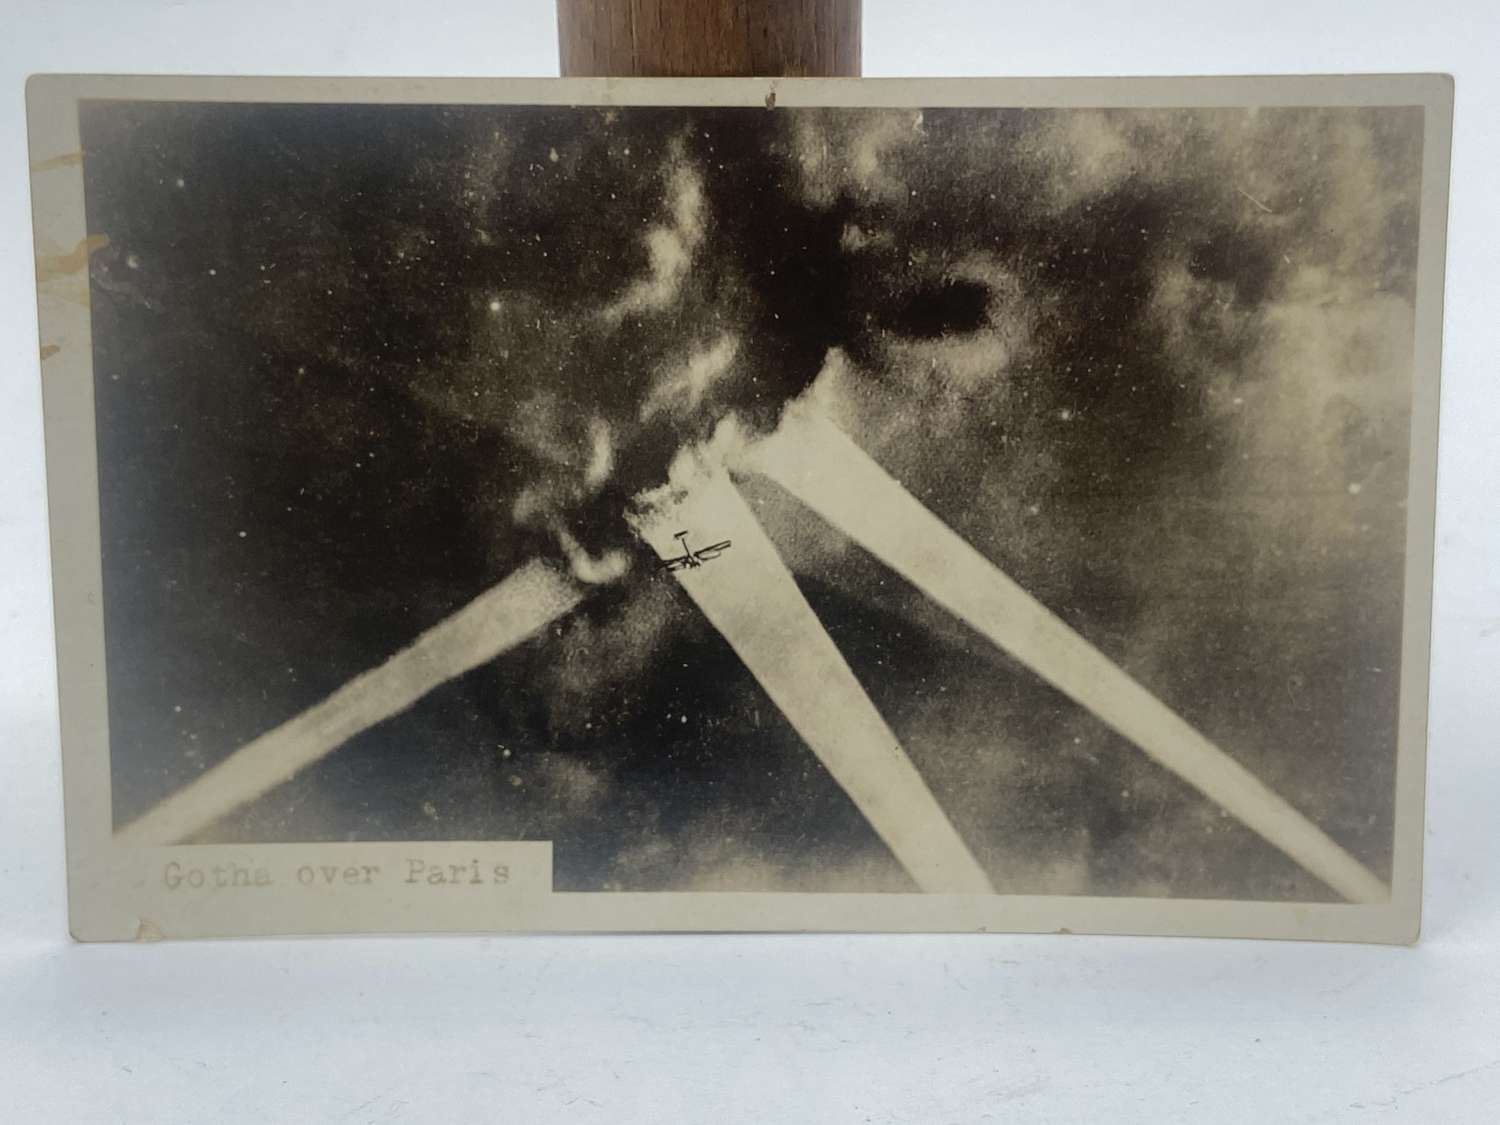 WW1 Deutsche Luftstreitkräfte Gotha Bomber Over Paris Photo Postcard